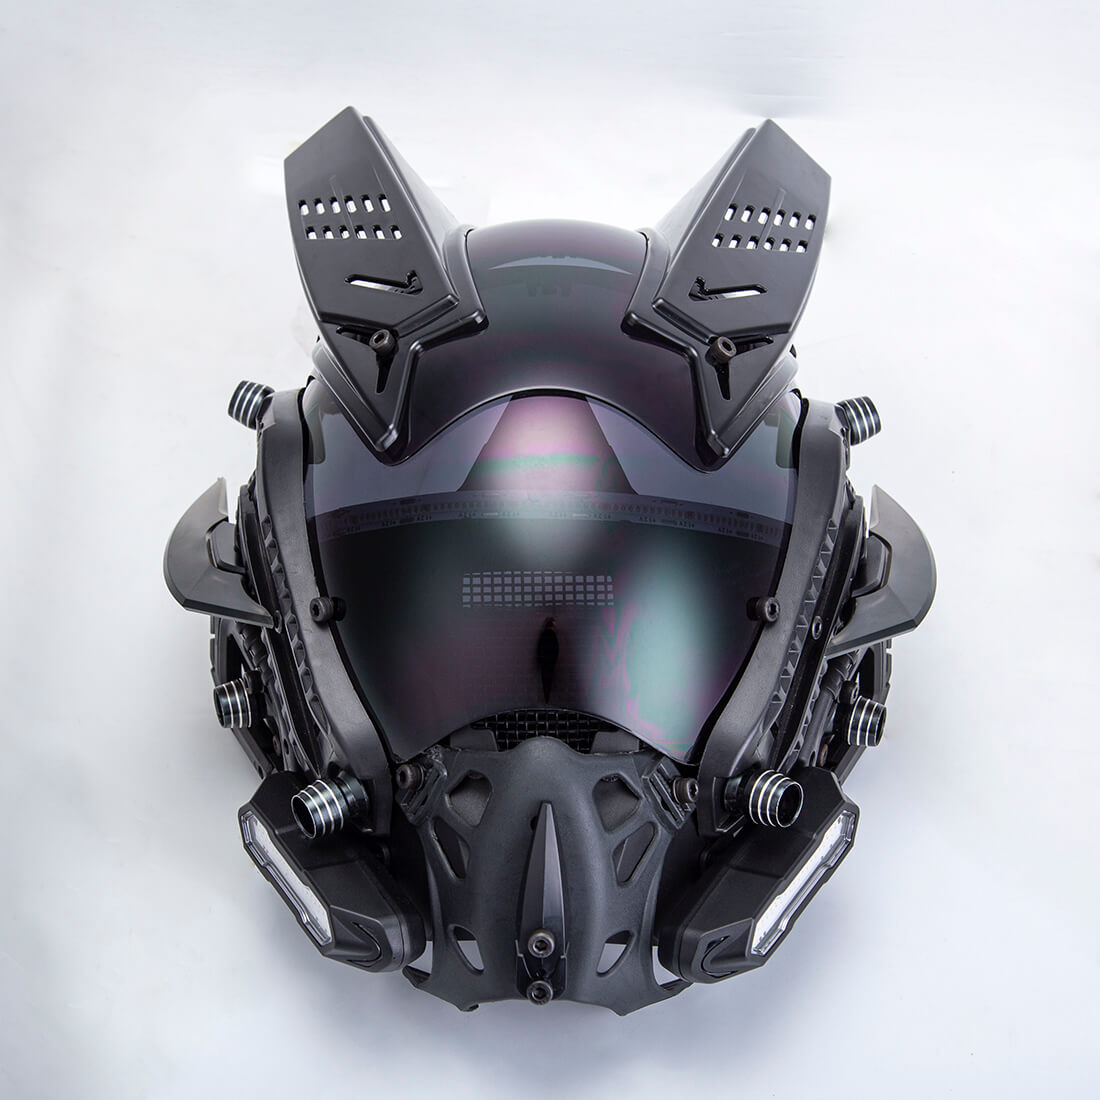 FuturFam-cyberpunk-mech-helmet-mask-with-lights-horns-carnival-props